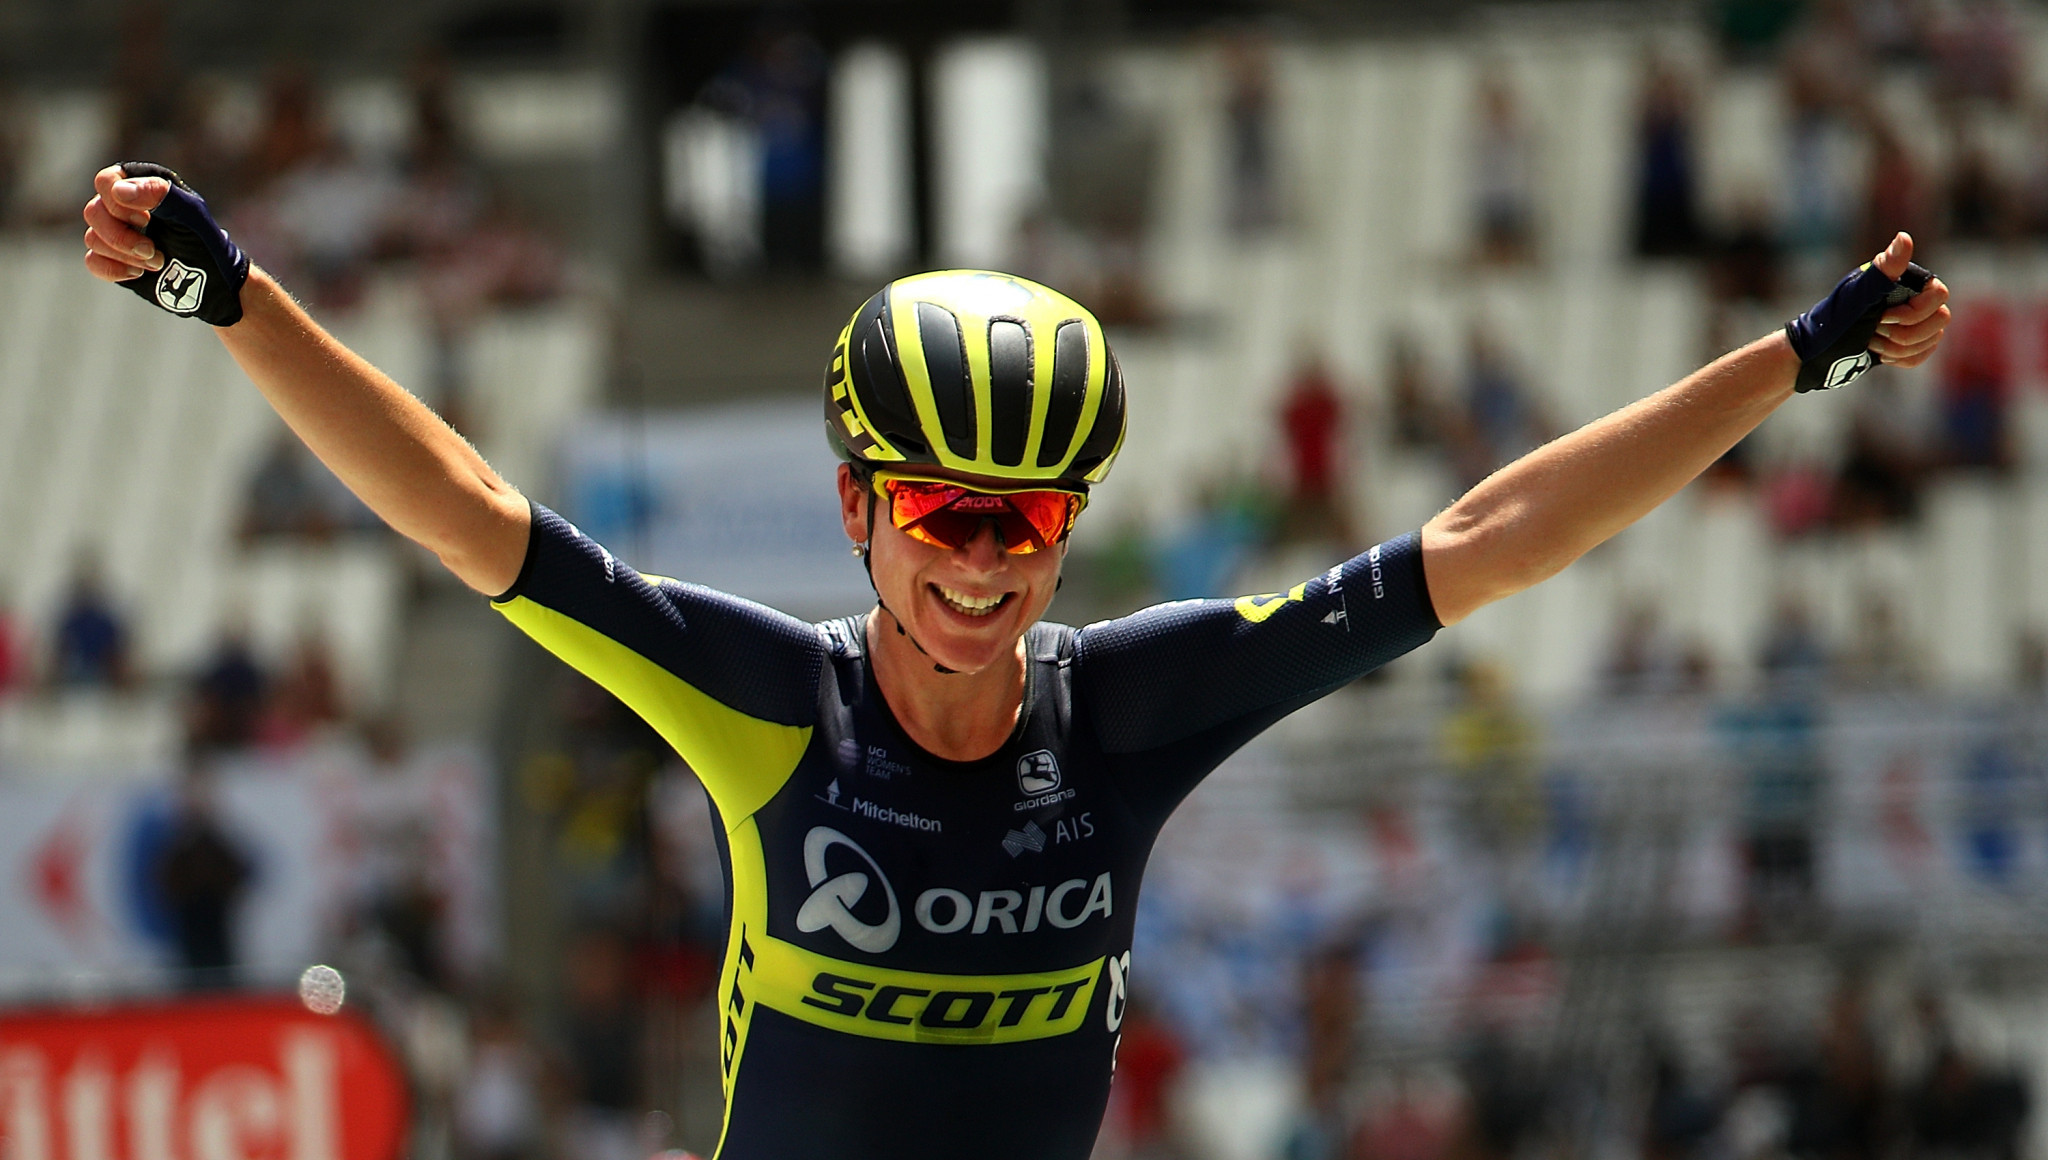 Dutch rider Annemiek van Vleuten won last year's edition of the event ©Getty Images